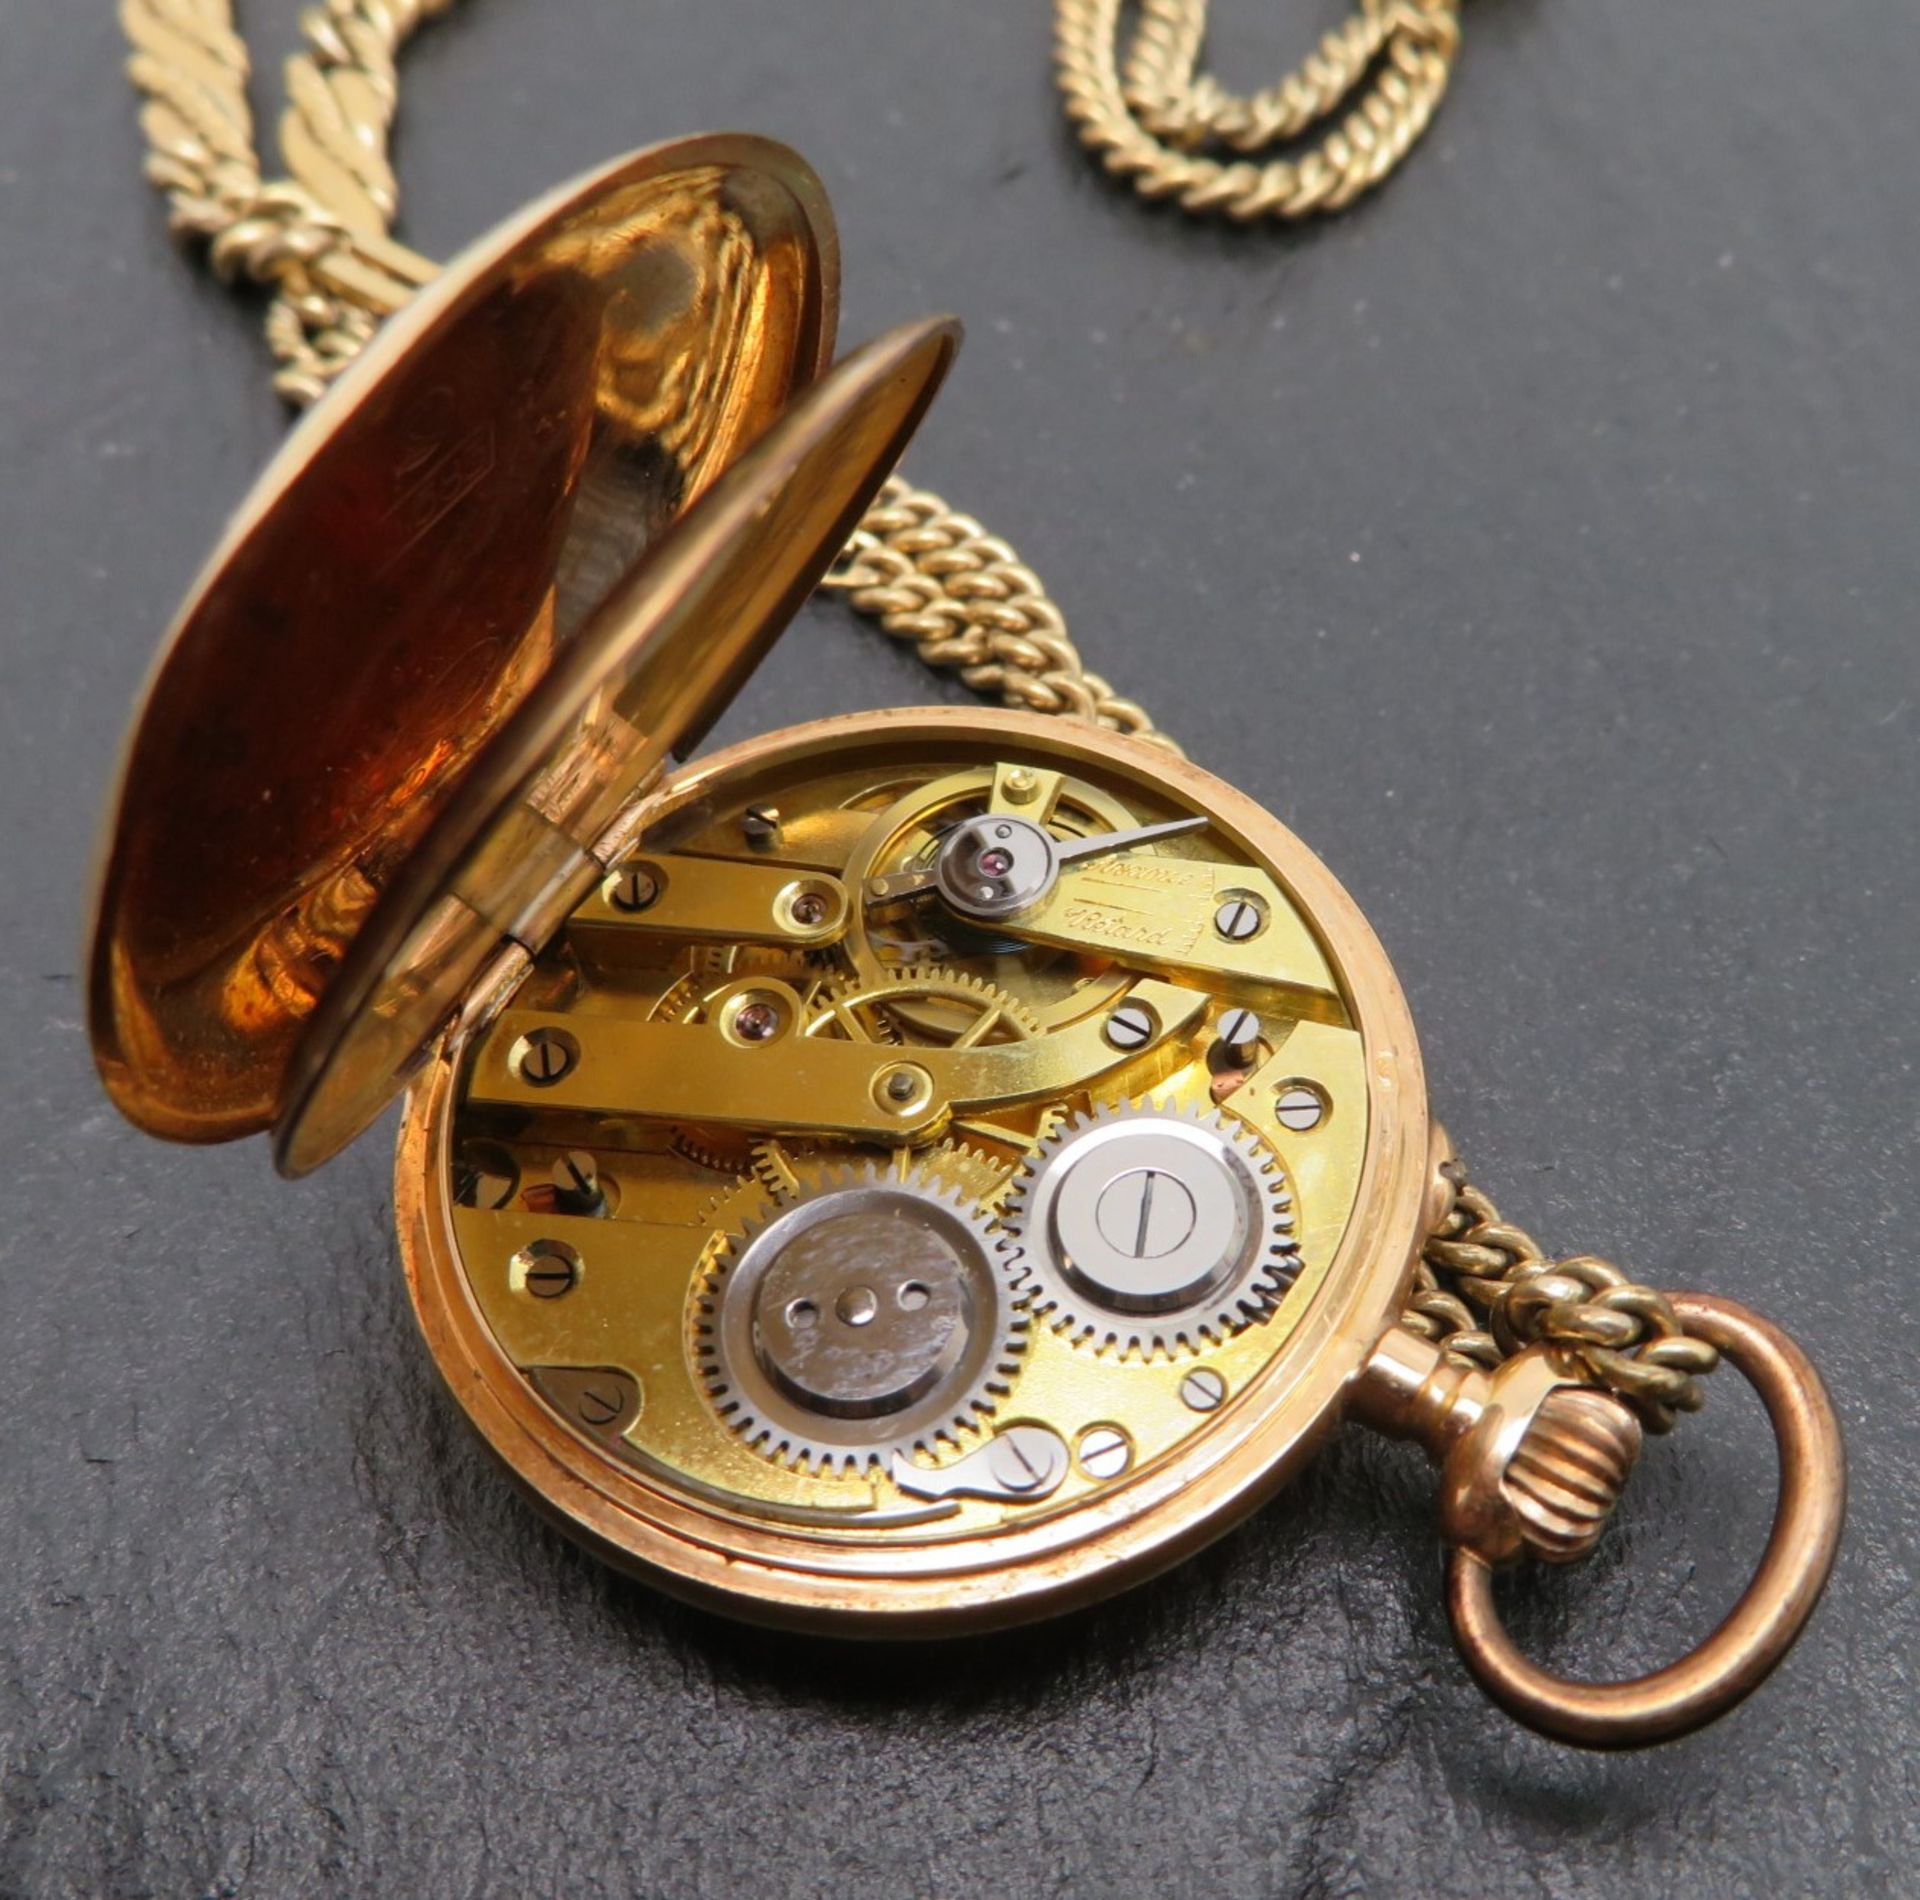 Damentaschenuhr an vergoldeter Uhrenkette, Gehäuse Gelbgold 585/000, punziert, Innendeckel Metall,  - Bild 3 aus 3